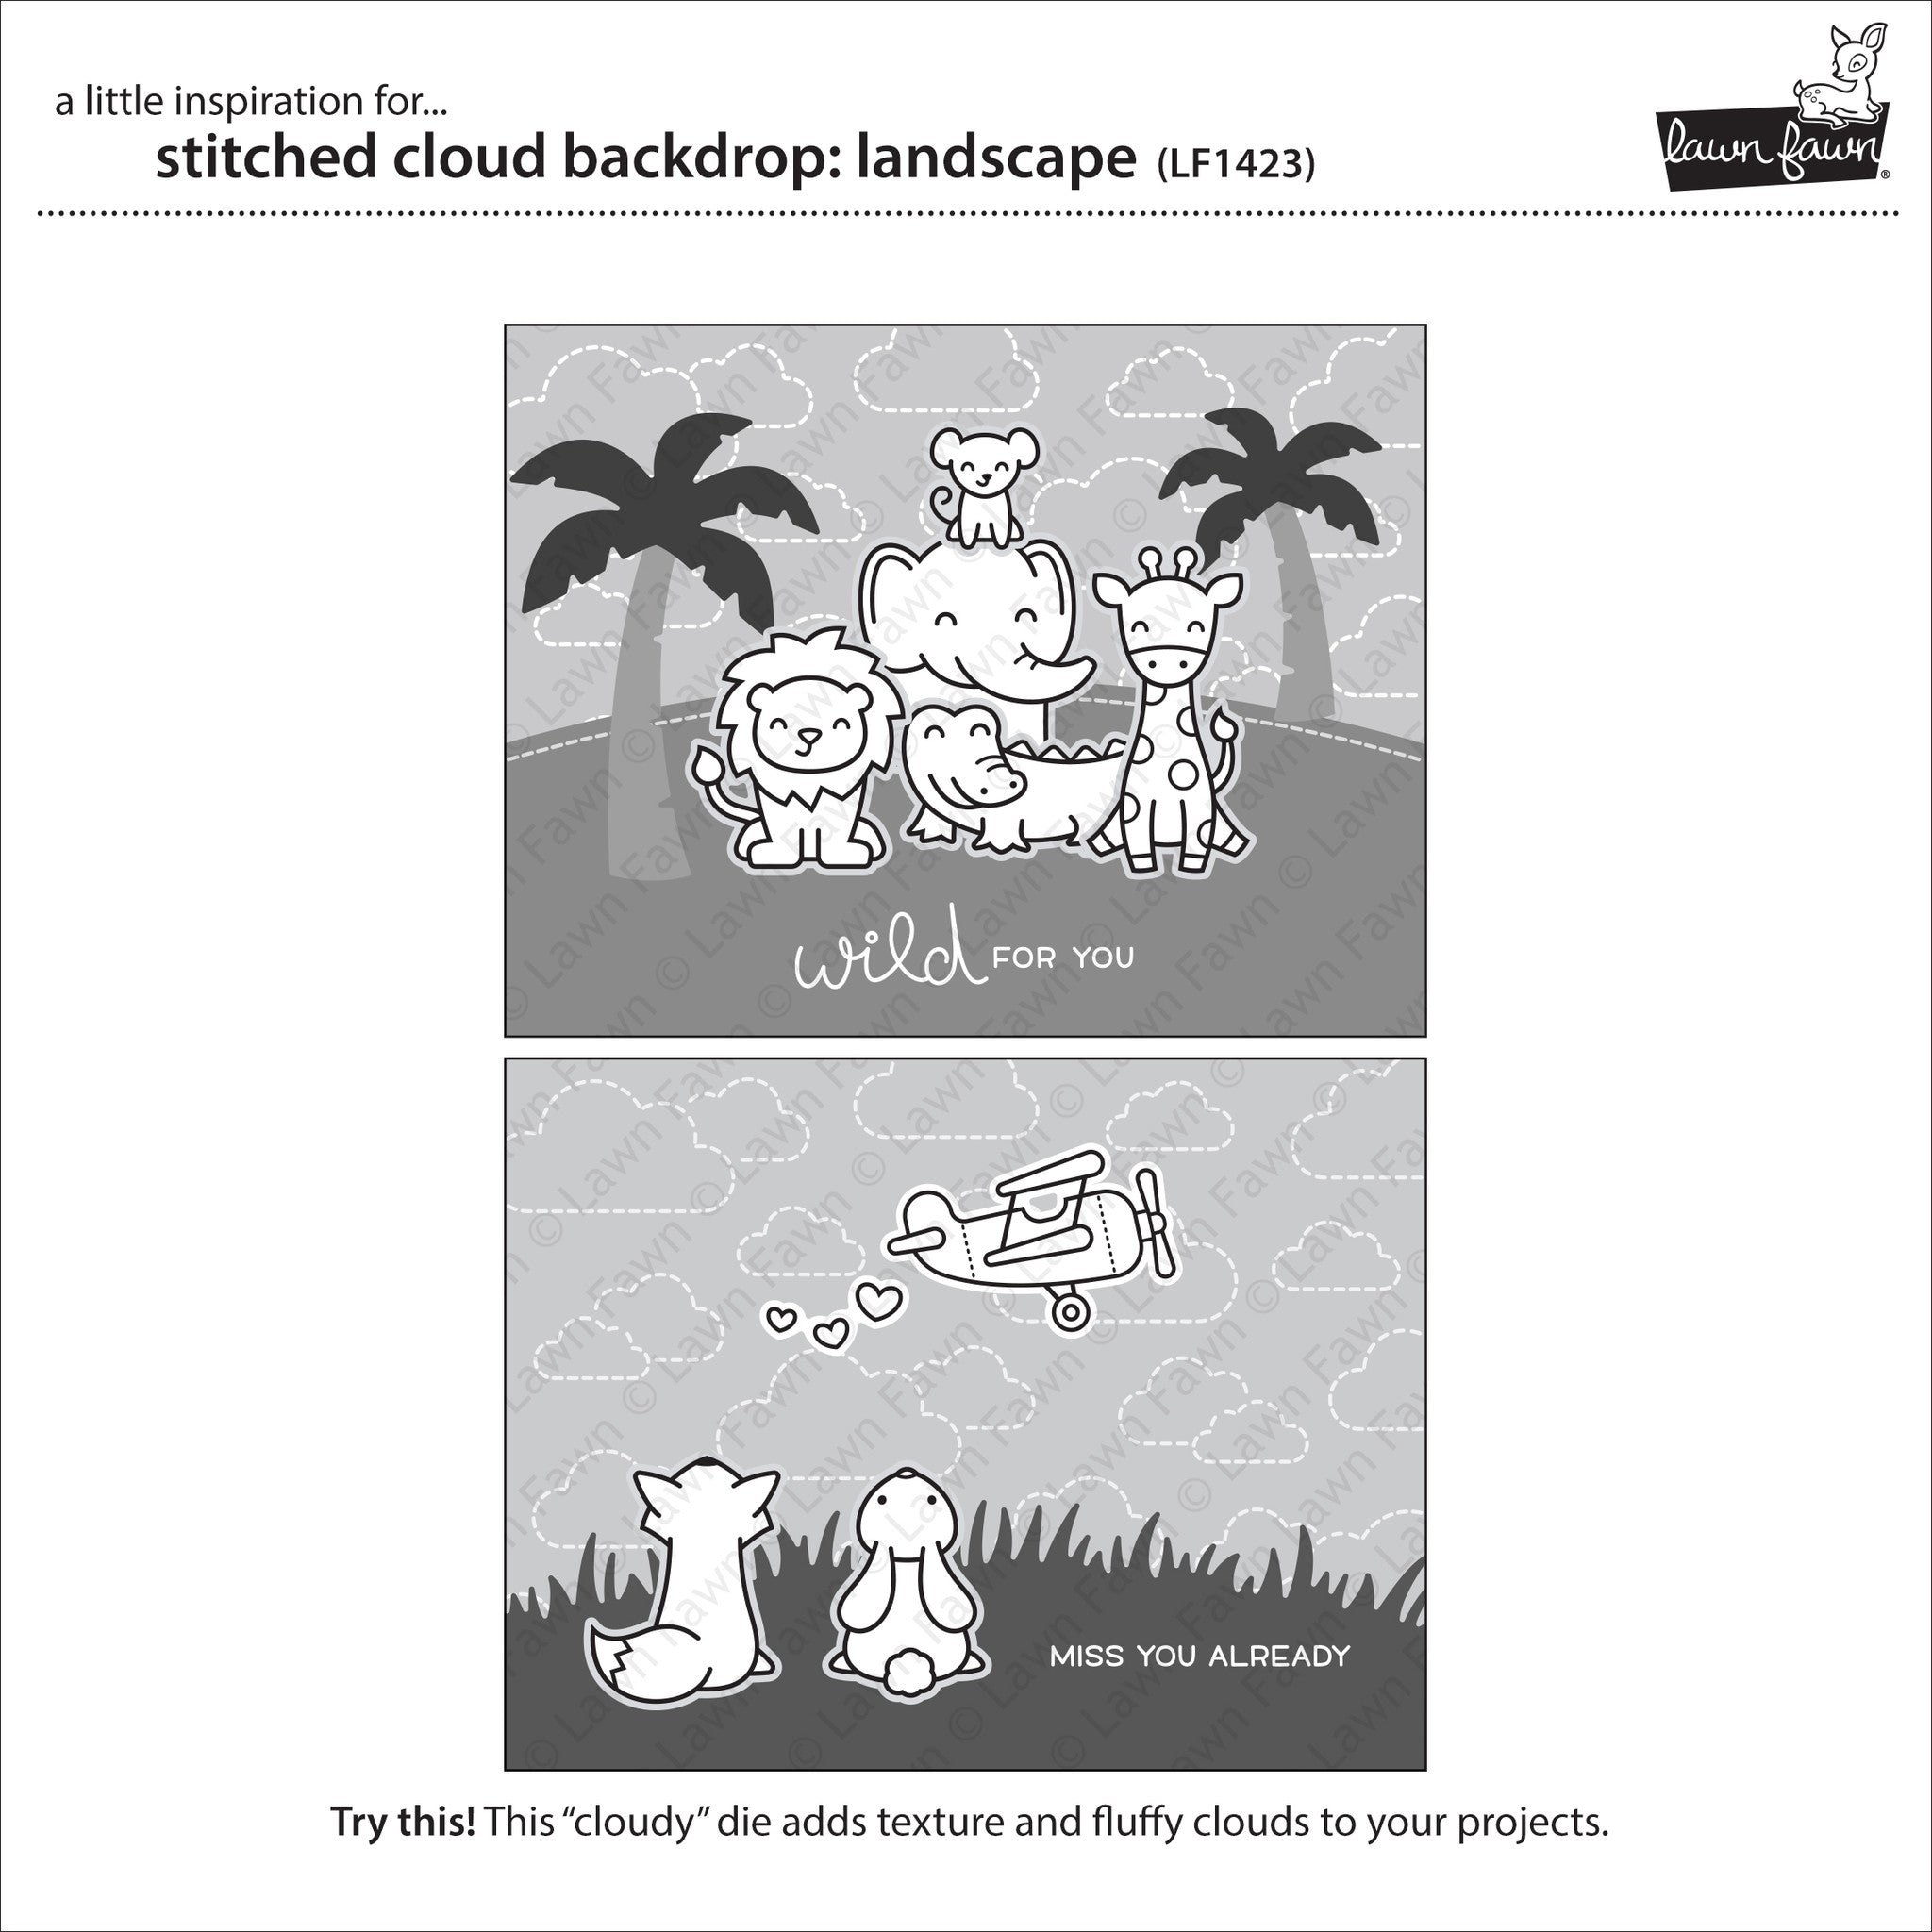 stitched cloud backdrop: landscape